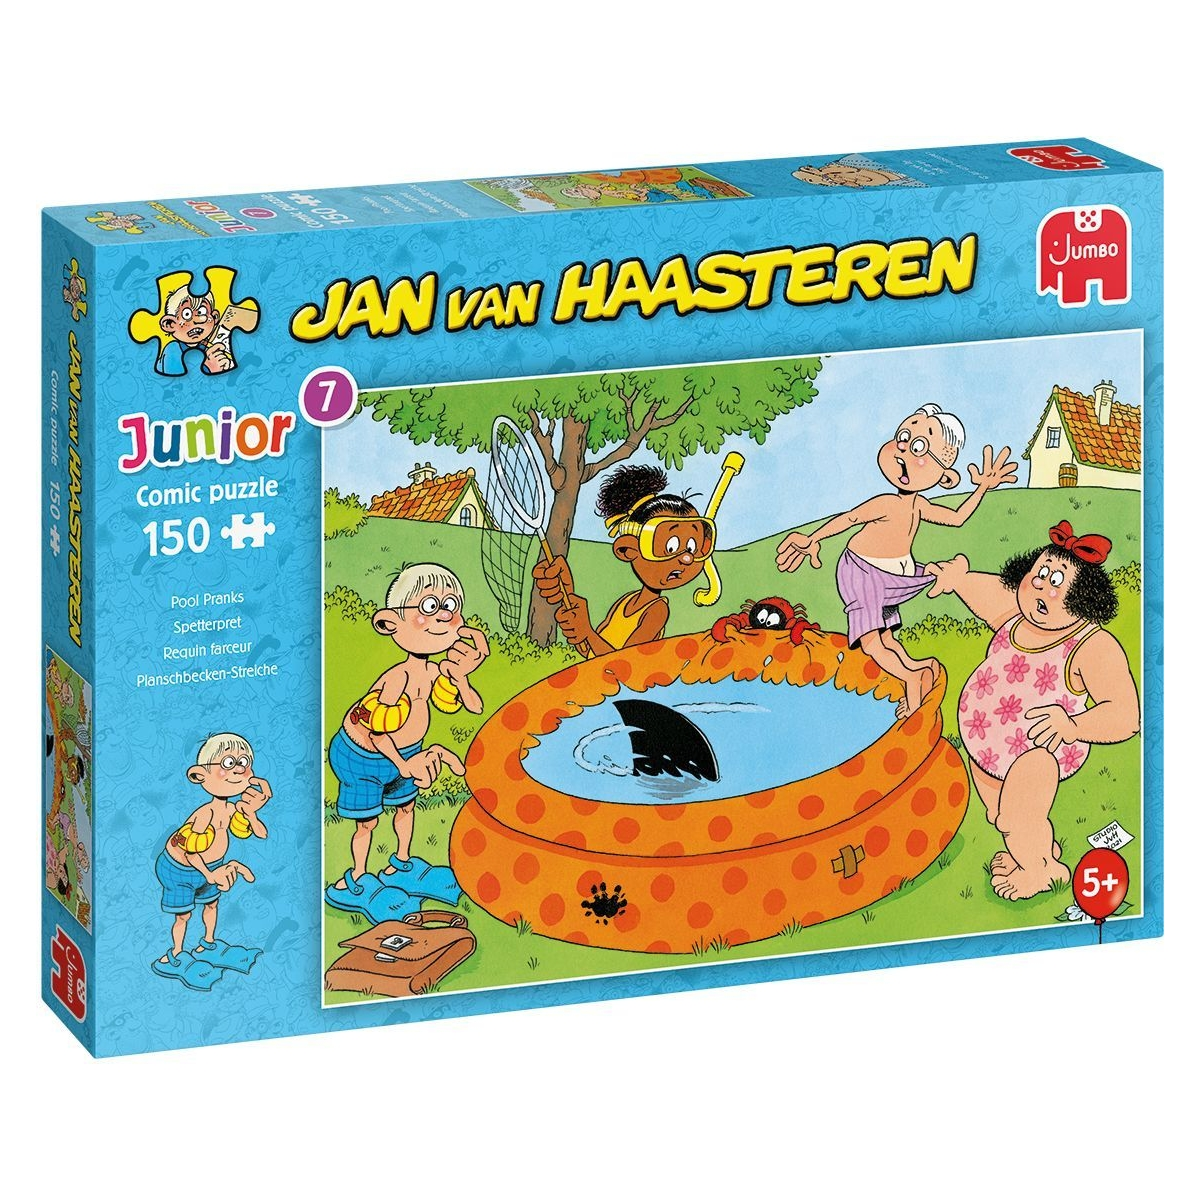 Teile van Haasteren Spetterpret Puzzle 150 Jan - Puzzle Junior JUMBO